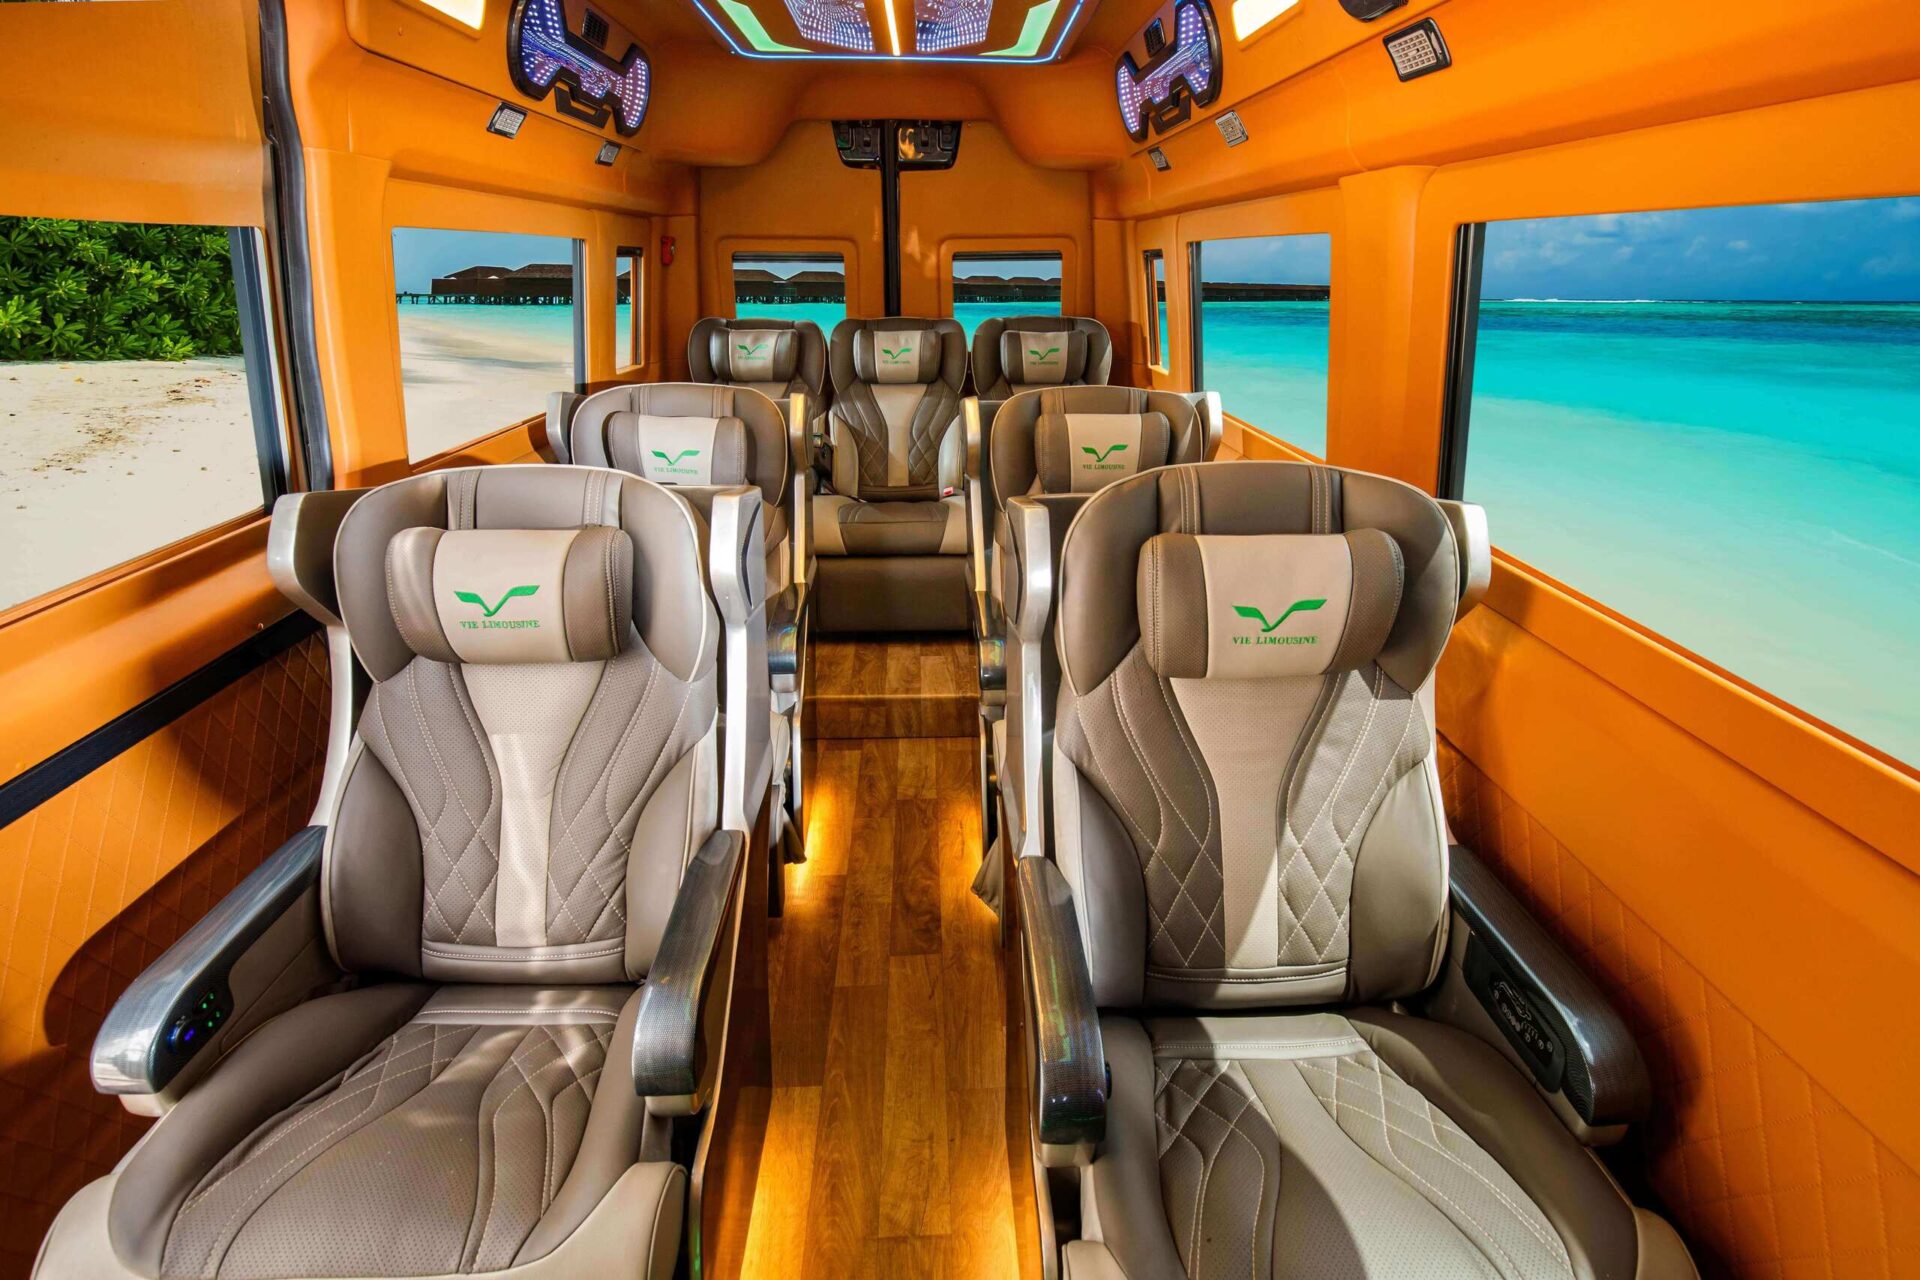 Vie Limo tự hào là đơn vị cung cấp dịch vụ xe limousine đẳng cấp và tốt nhất tại TPHCM, mang đến cho bạn trải nghiệm tốt nhất trong từng chuyến đi.